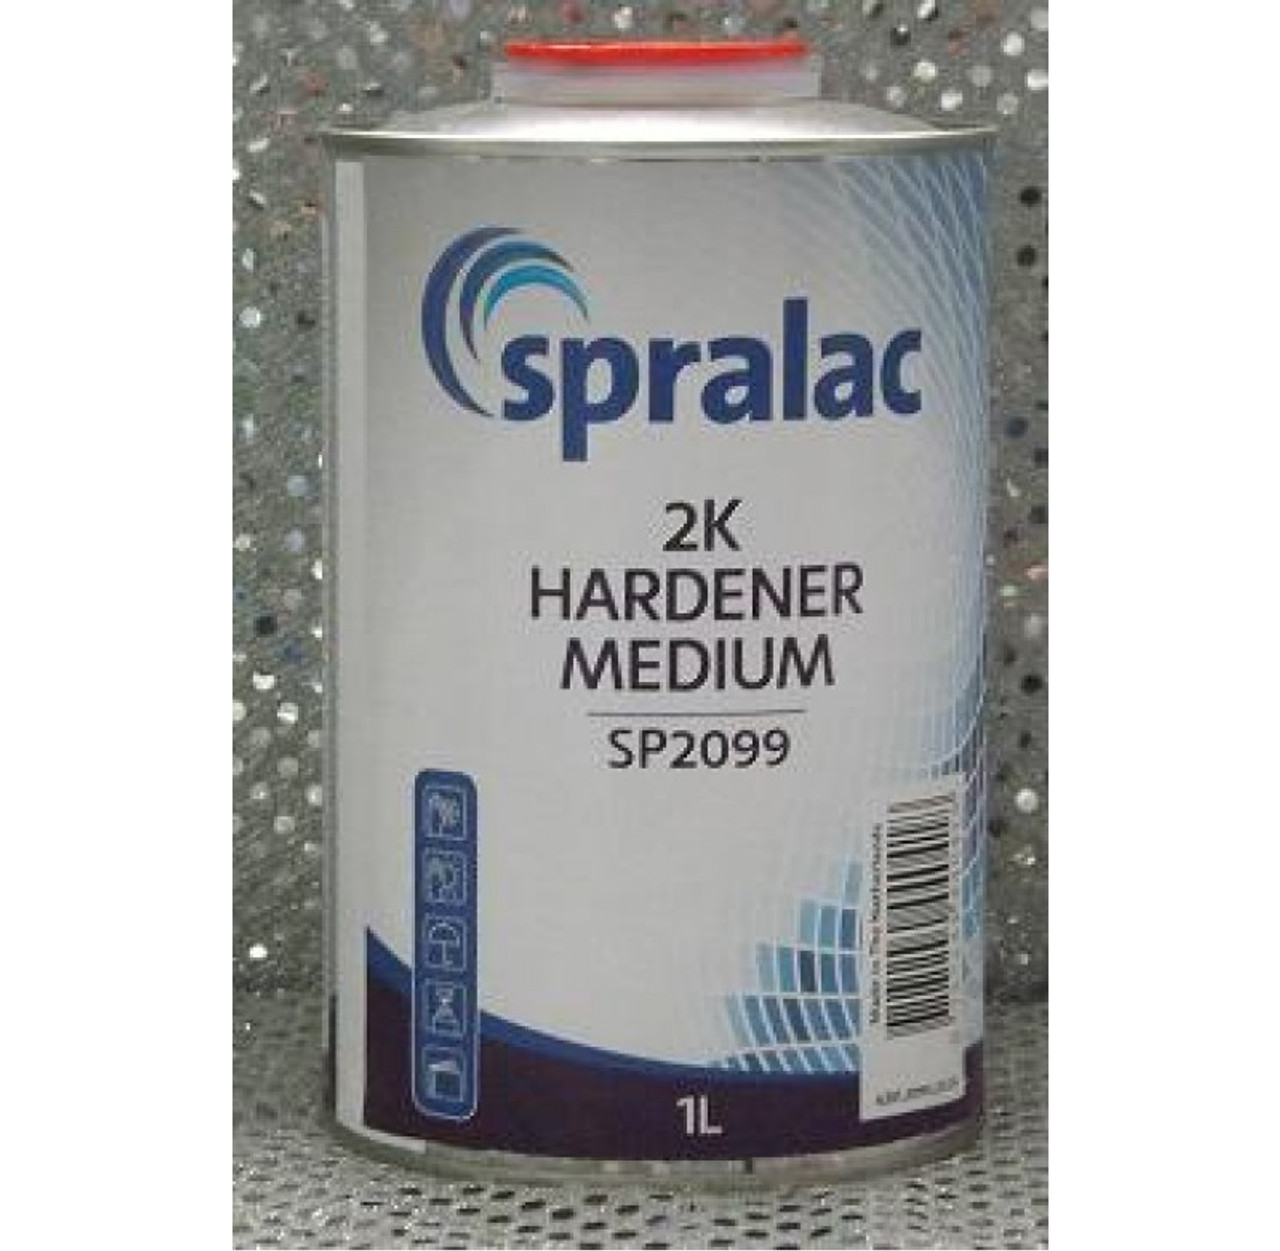 Spralac 2K SP2099 Medium Hardener 1Lt